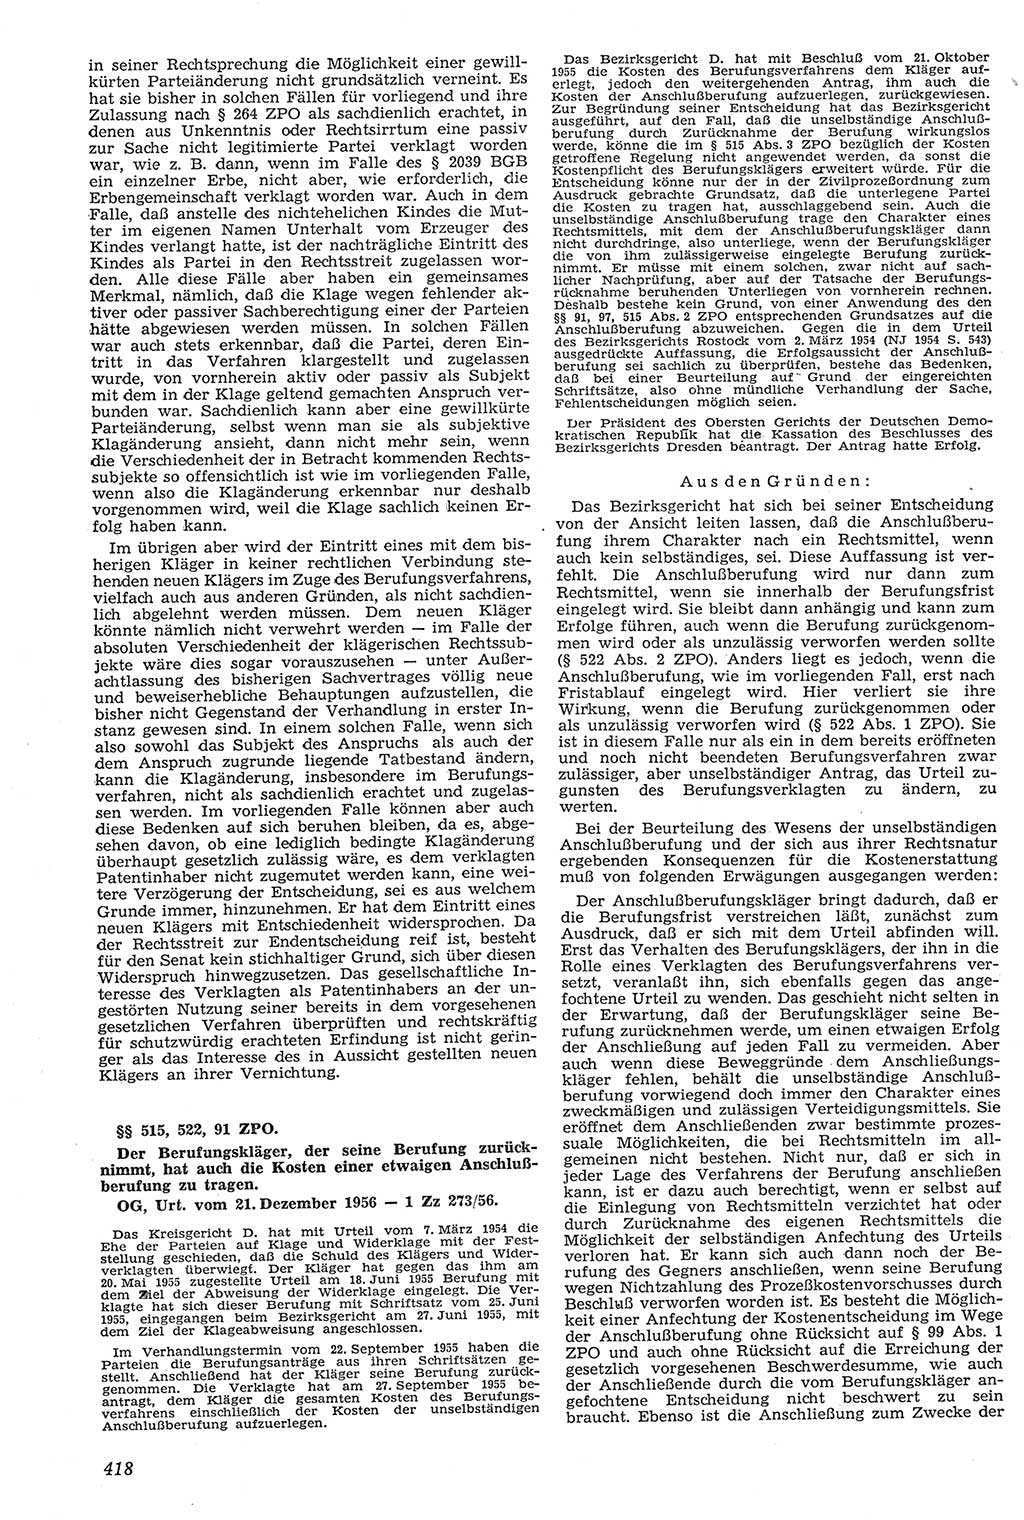 Neue Justiz (NJ), Zeitschrift für Recht und Rechtswissenschaft [Deutsche Demokratische Republik (DDR)], 11. Jahrgang 1957, Seite 418 (NJ DDR 1957, S. 418)